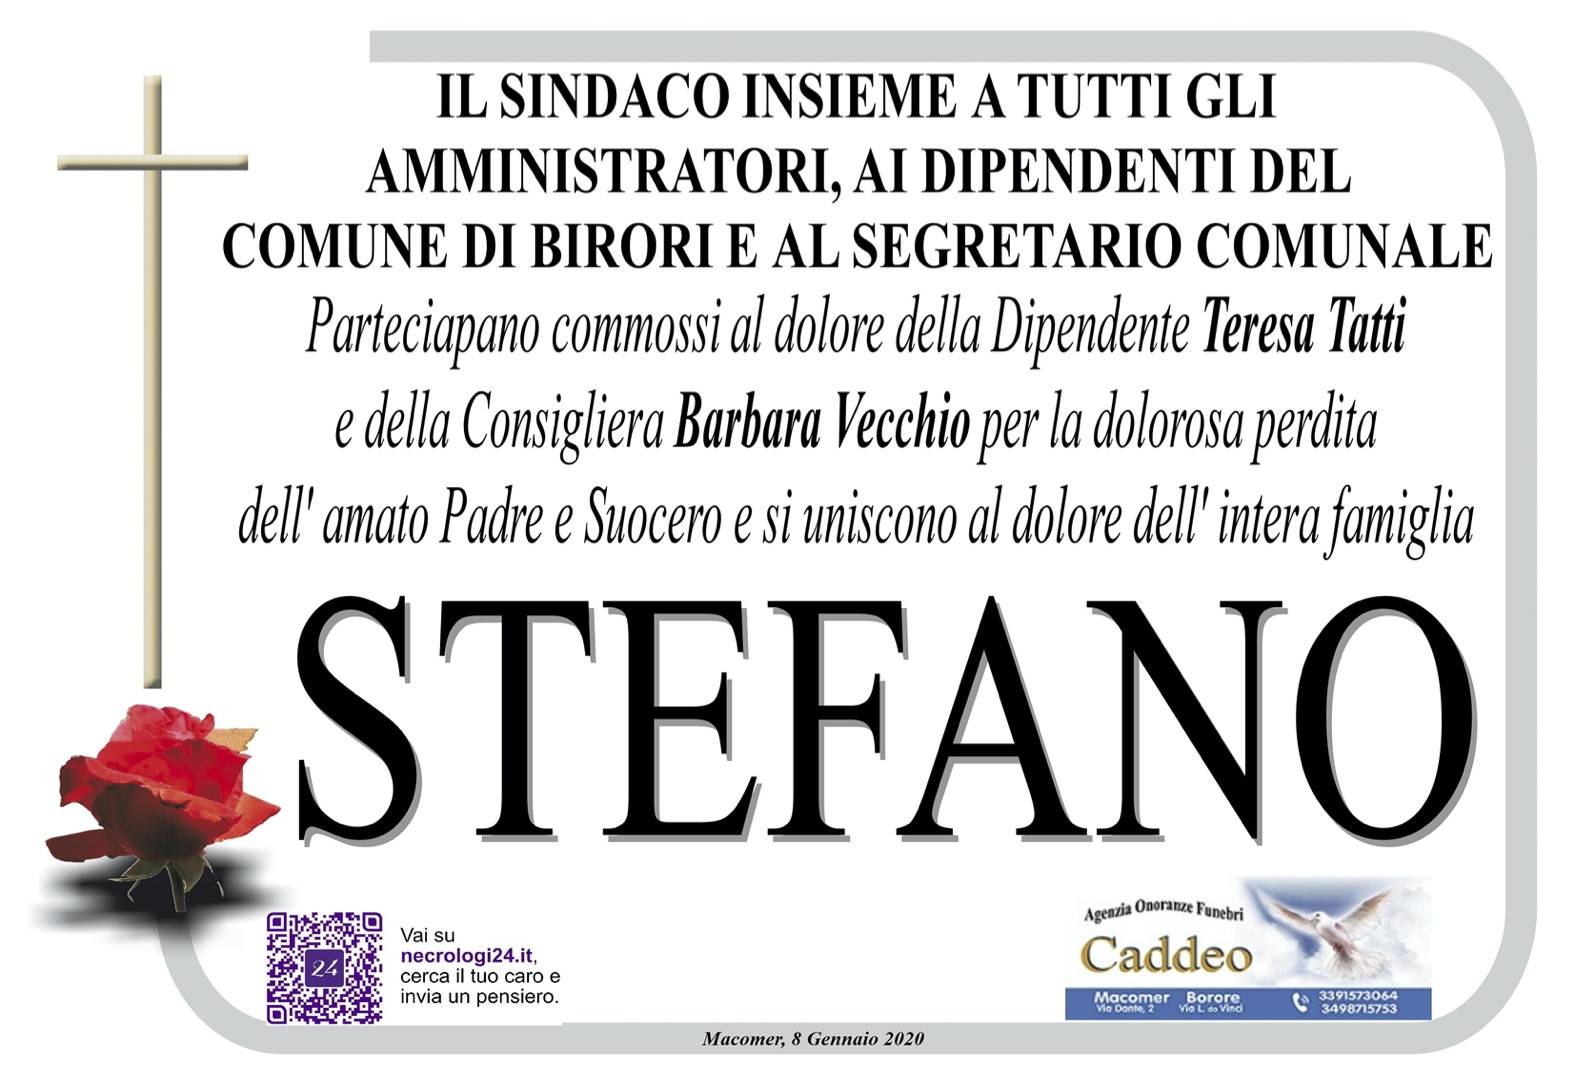 Partecipazione Sindaco/Amministratori/Dipendenti/Segretario Comune Birori - def. Stefano Tatti